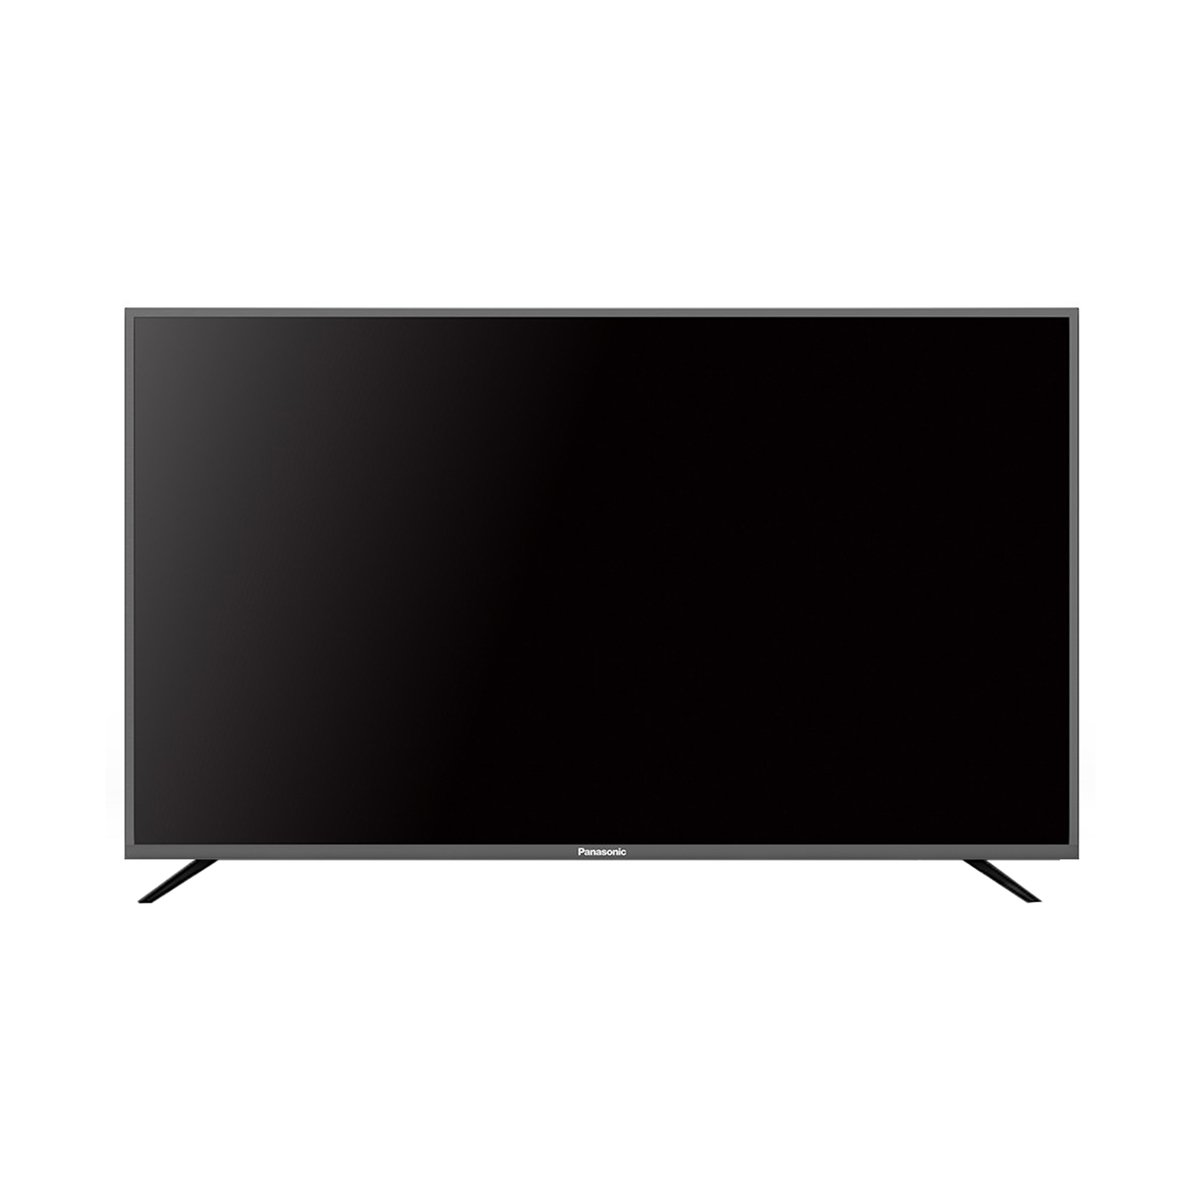 Panasonic HD LED TV TH-32F336M 32inch